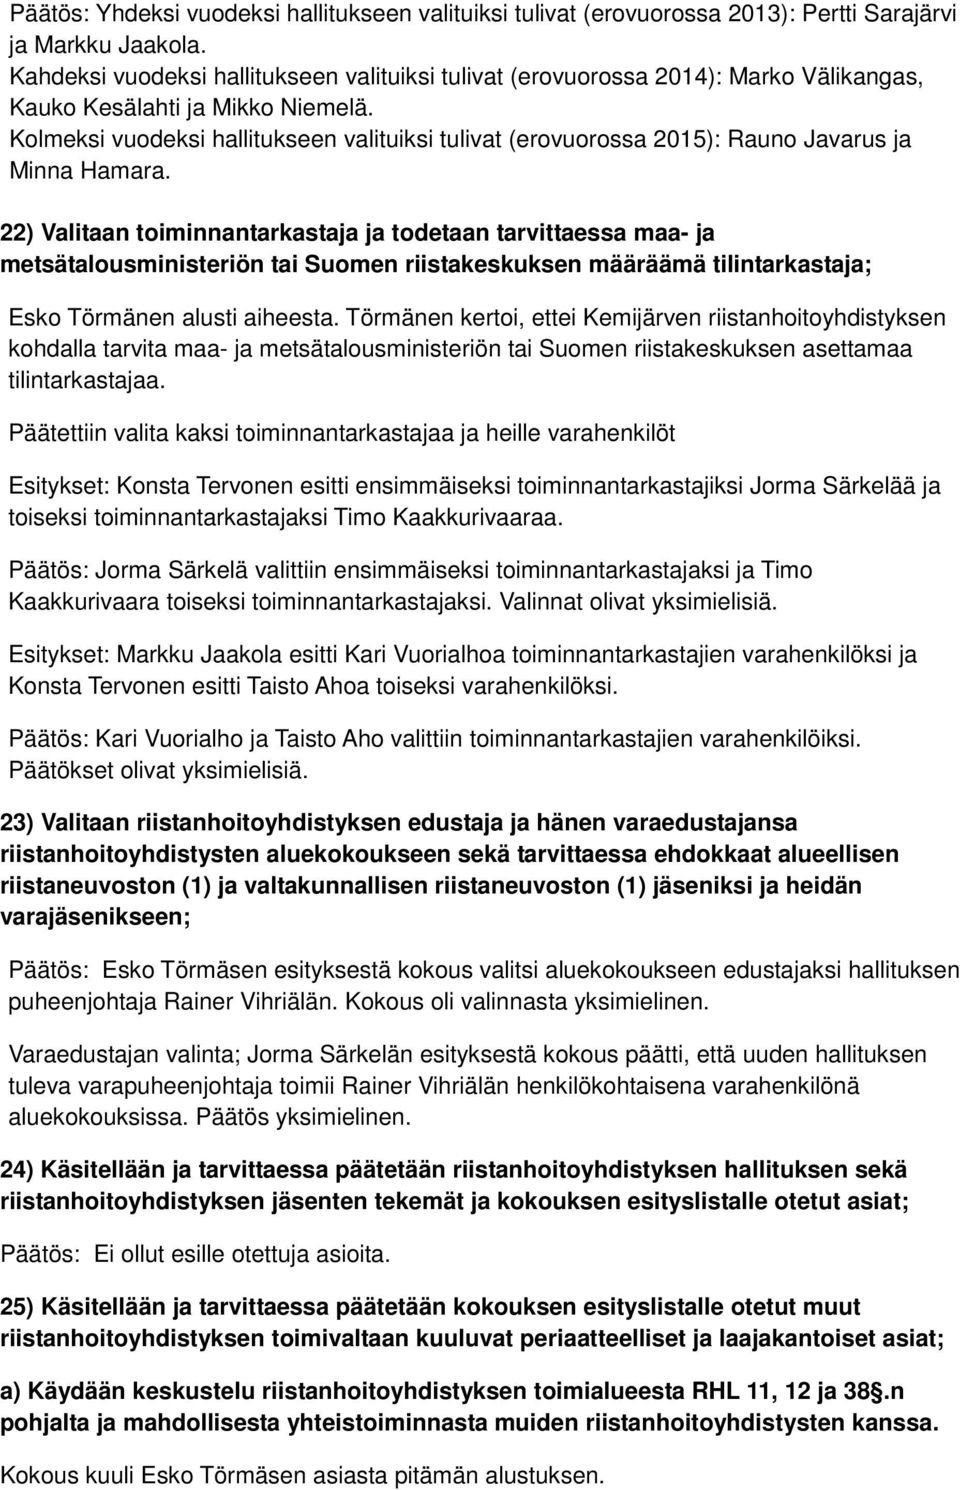 Kolmeksi vuodeksi hallitukseen valituiksi tulivat (erovuorossa 2015): Rauno Javarus ja Minna Hamara.